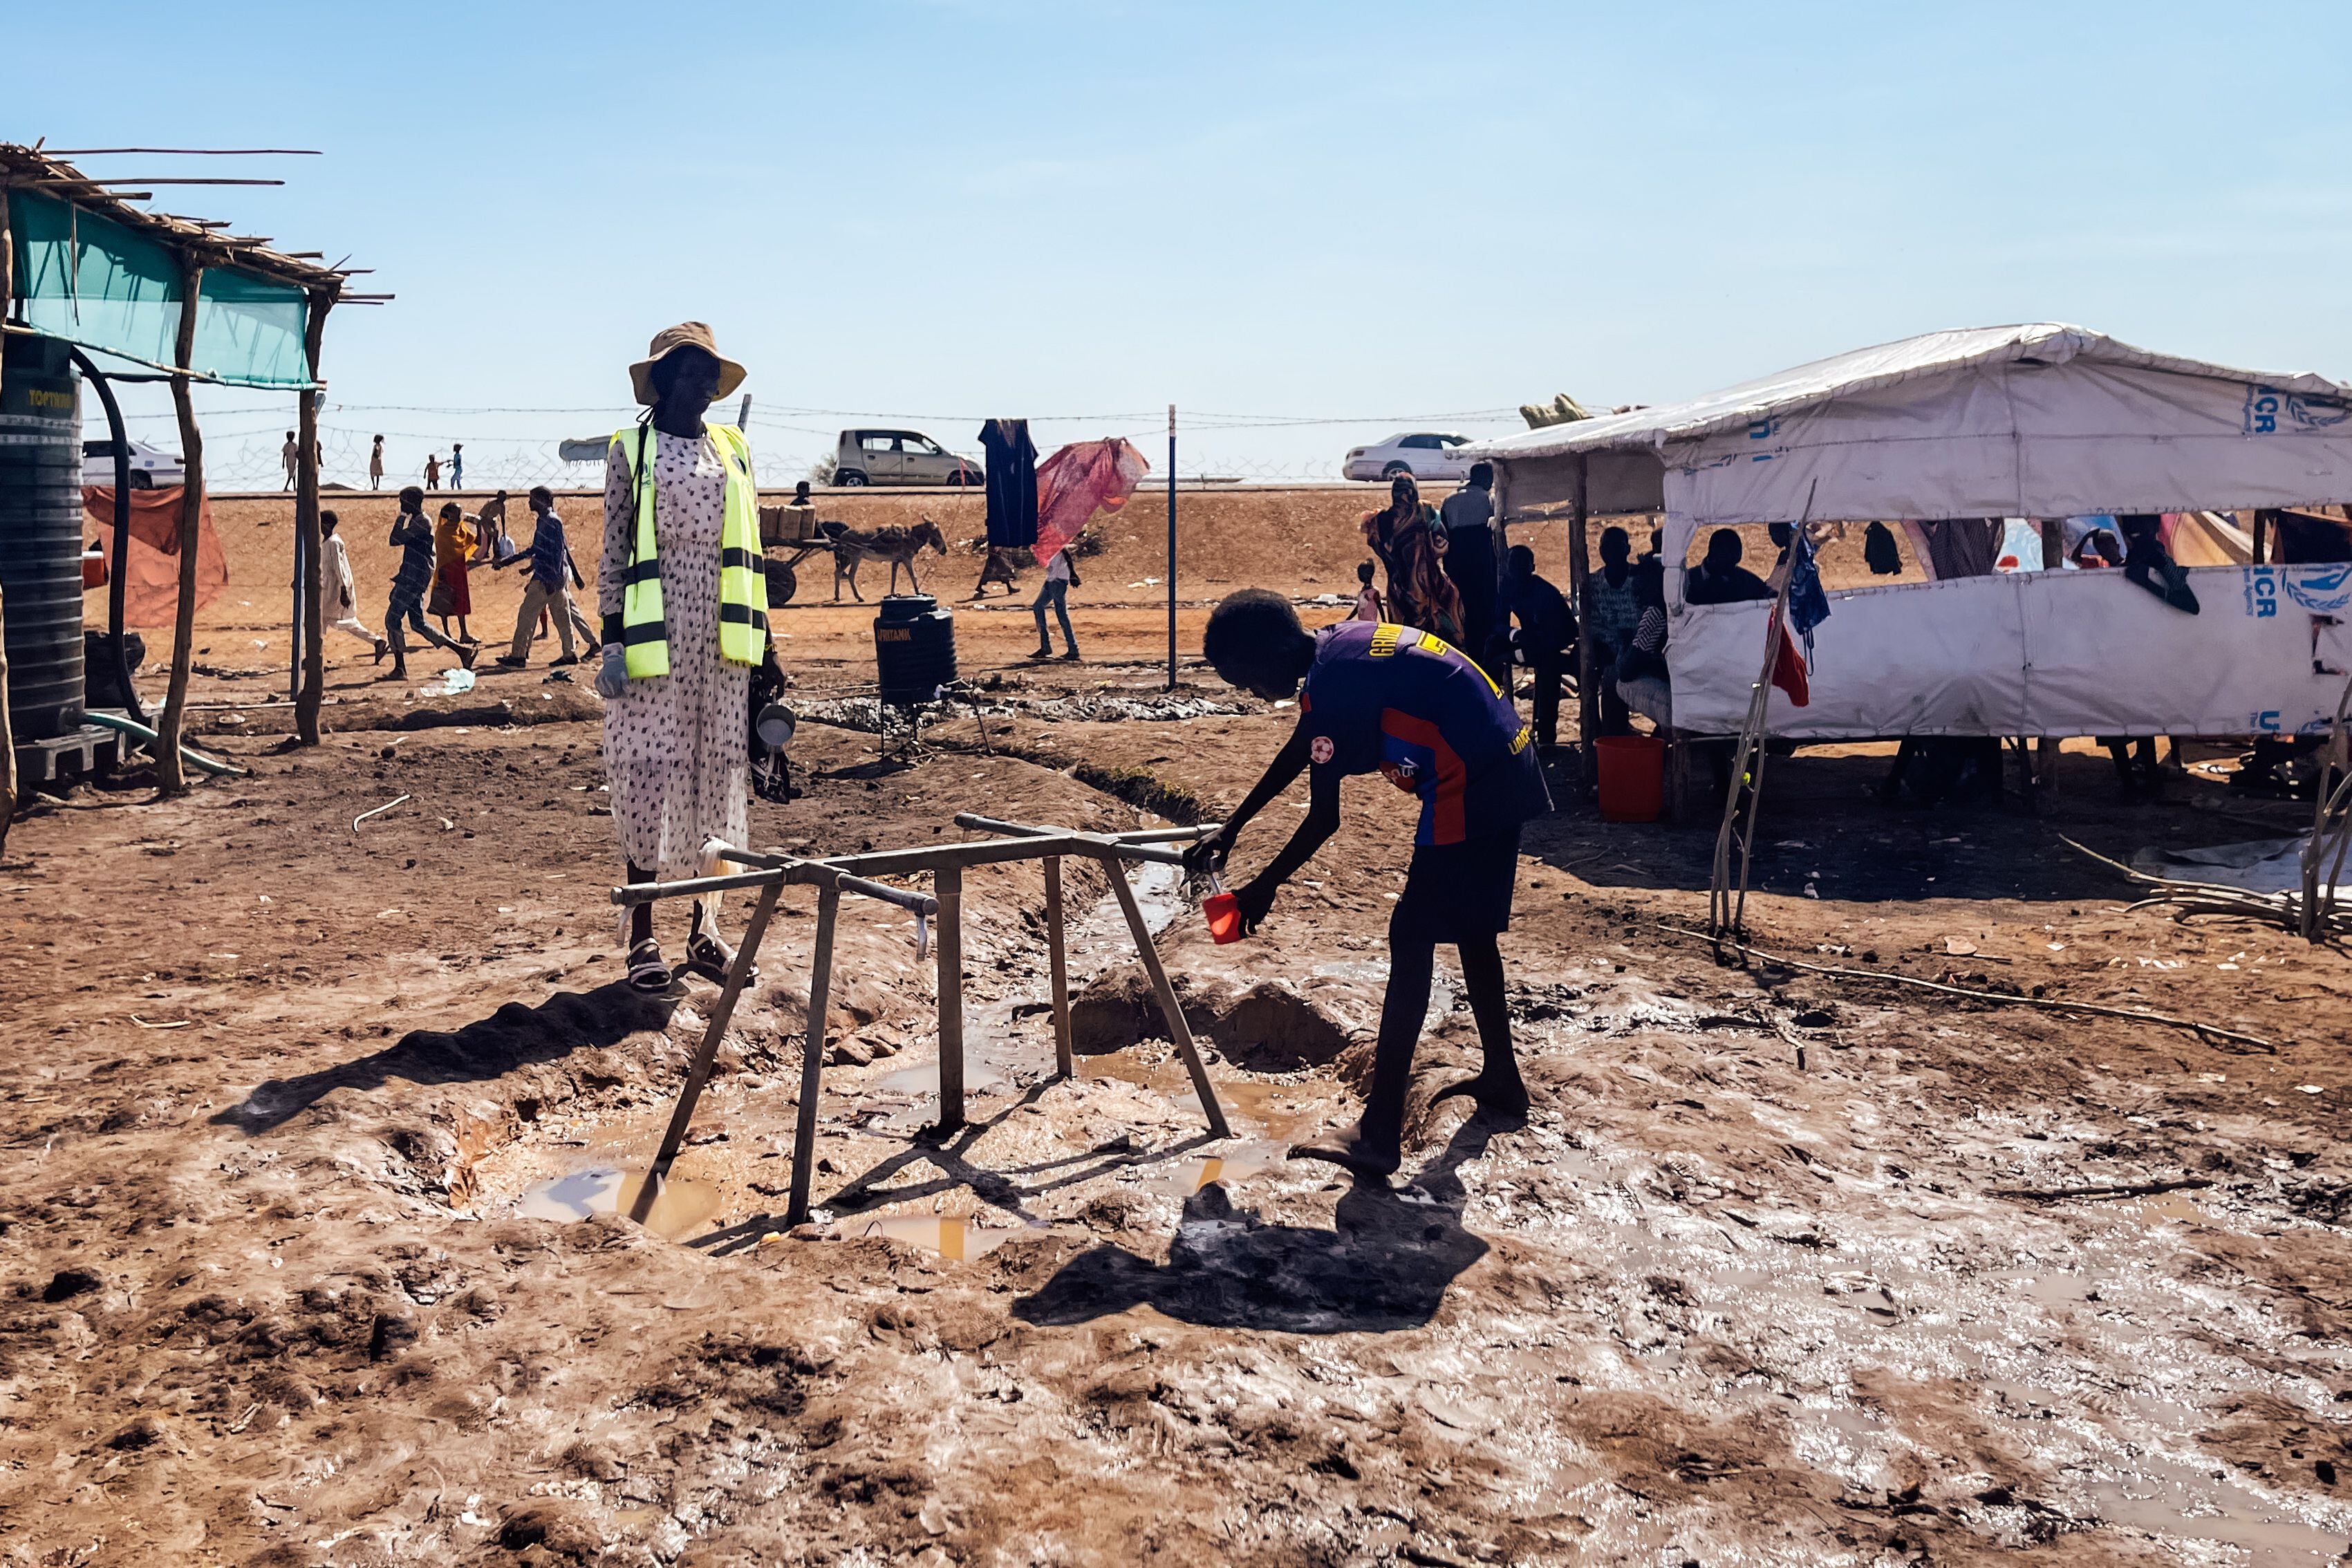 Punto de agua potable en el descampado de Joda donde miles de personas aguardan semanas para ser trasladas hasta el centro de tránsito de Renk, en Sudán del Sur.